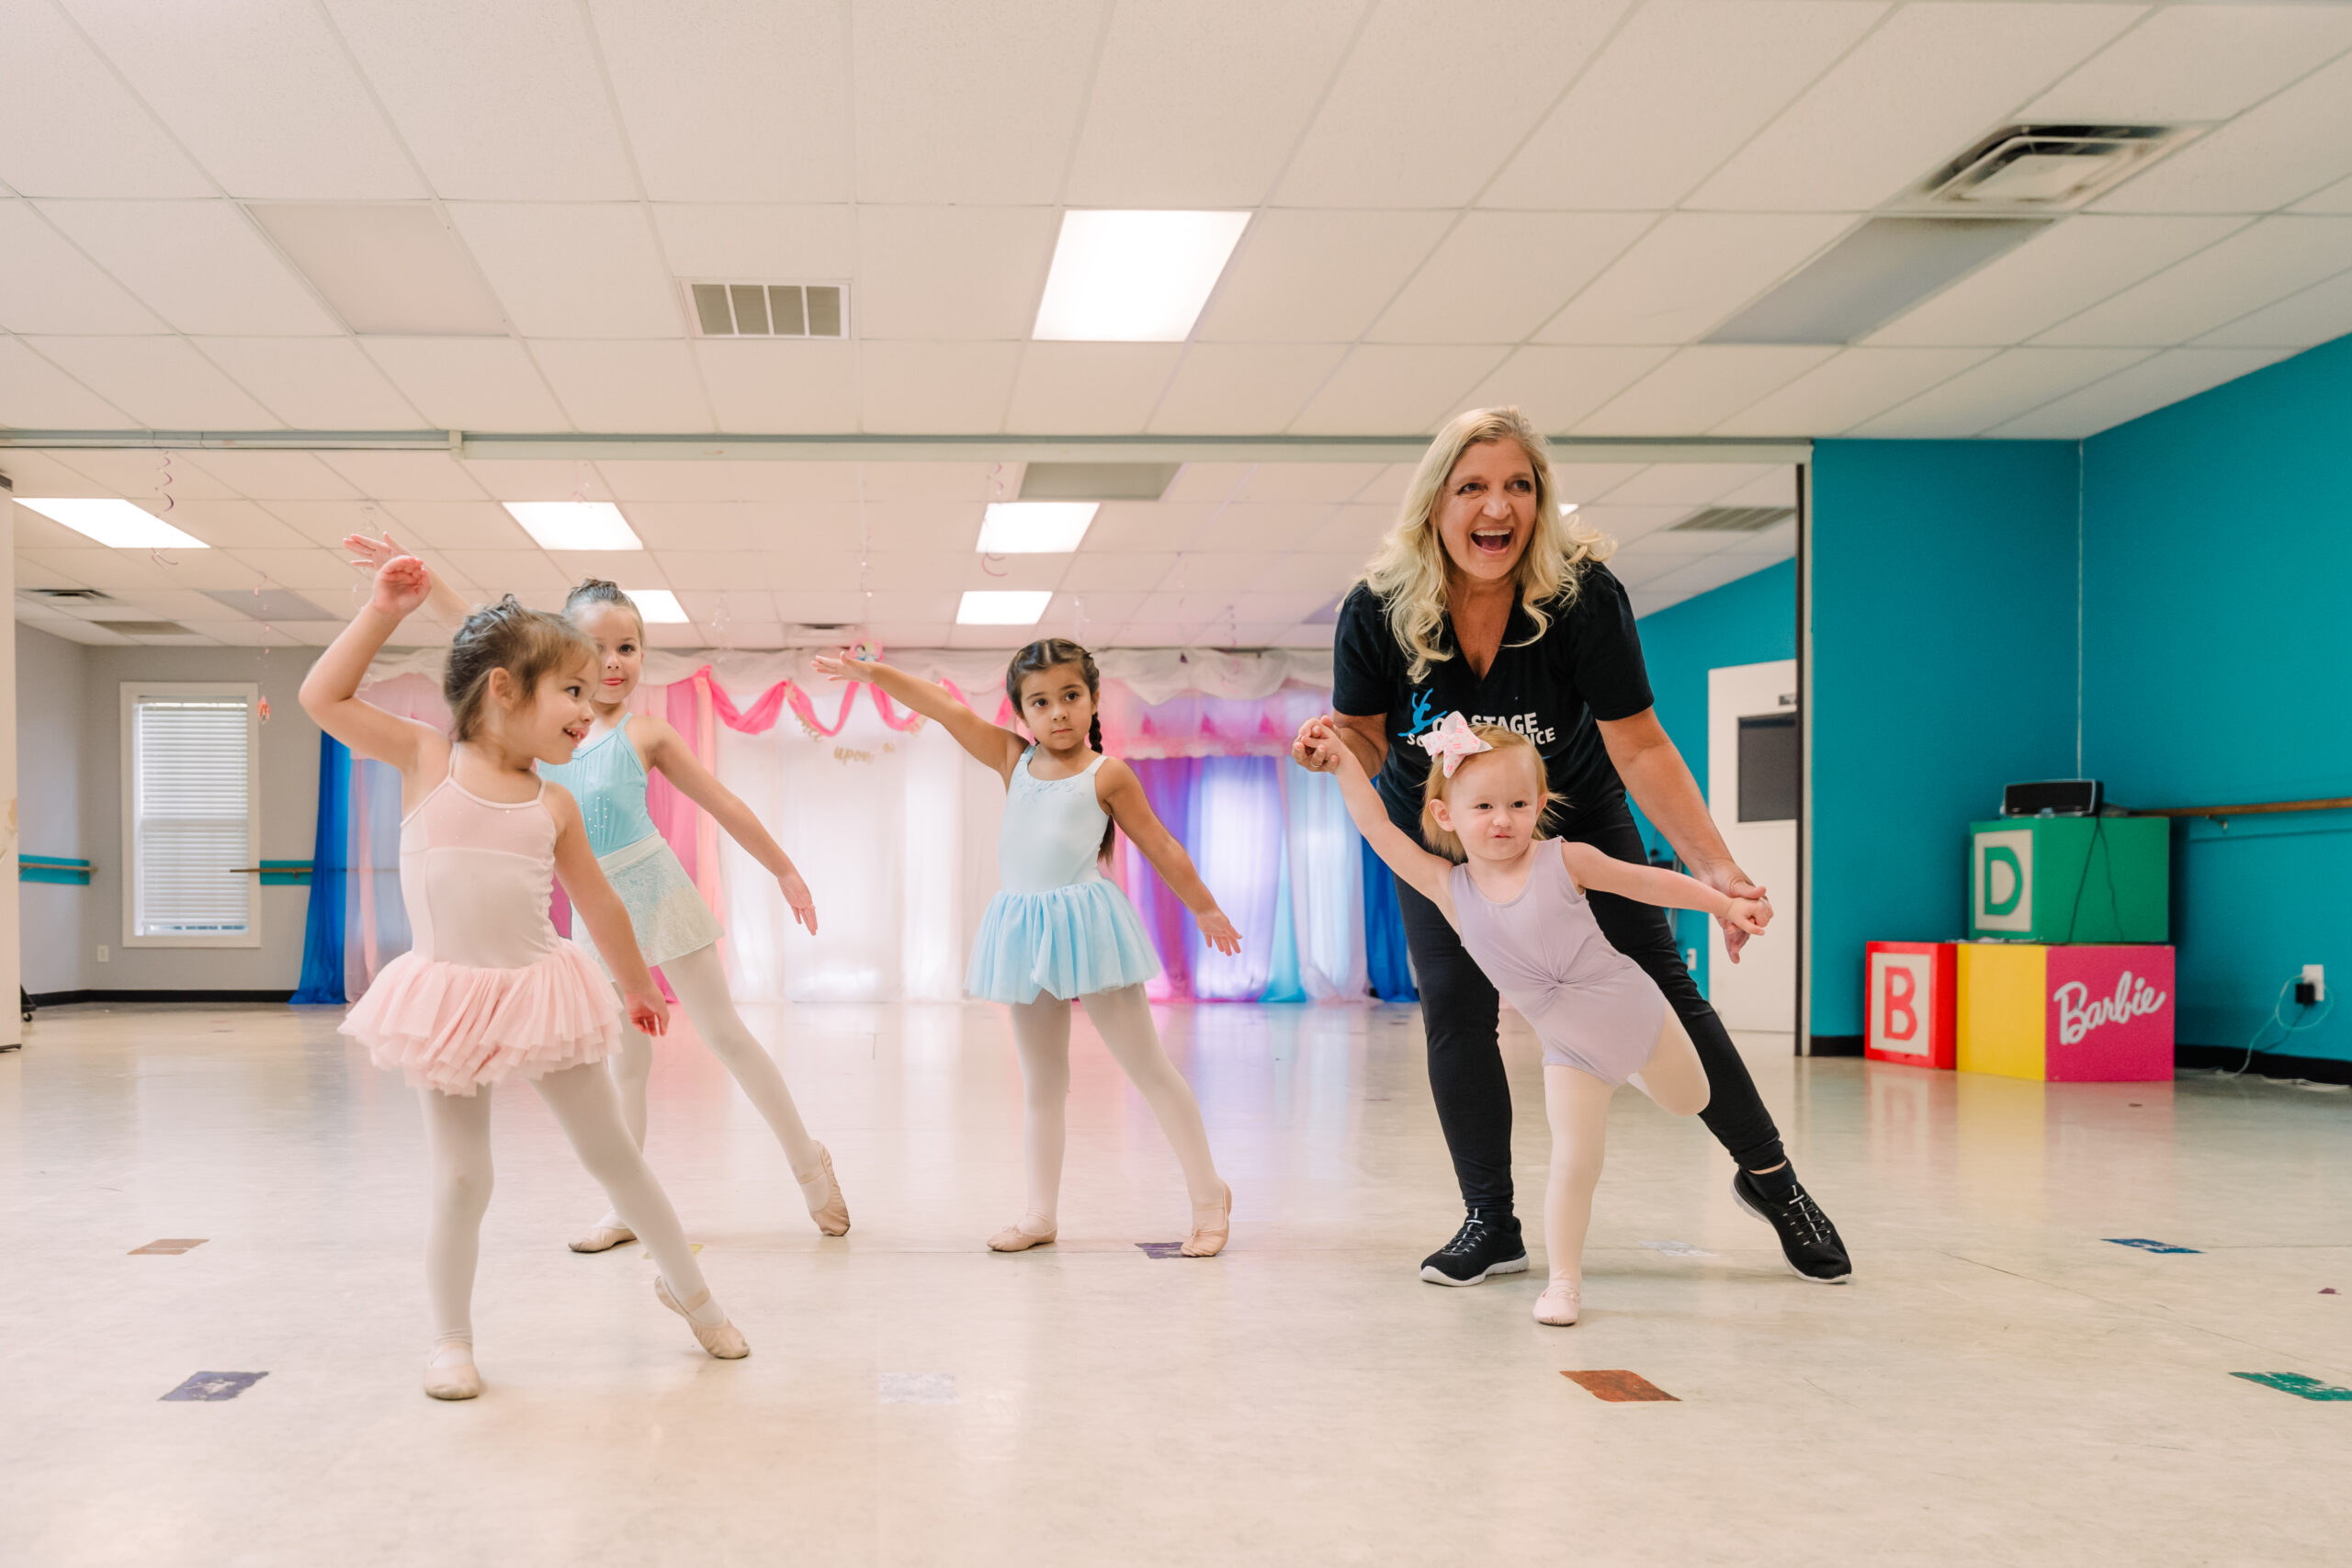 Lori fields helps kids in her dance classes.